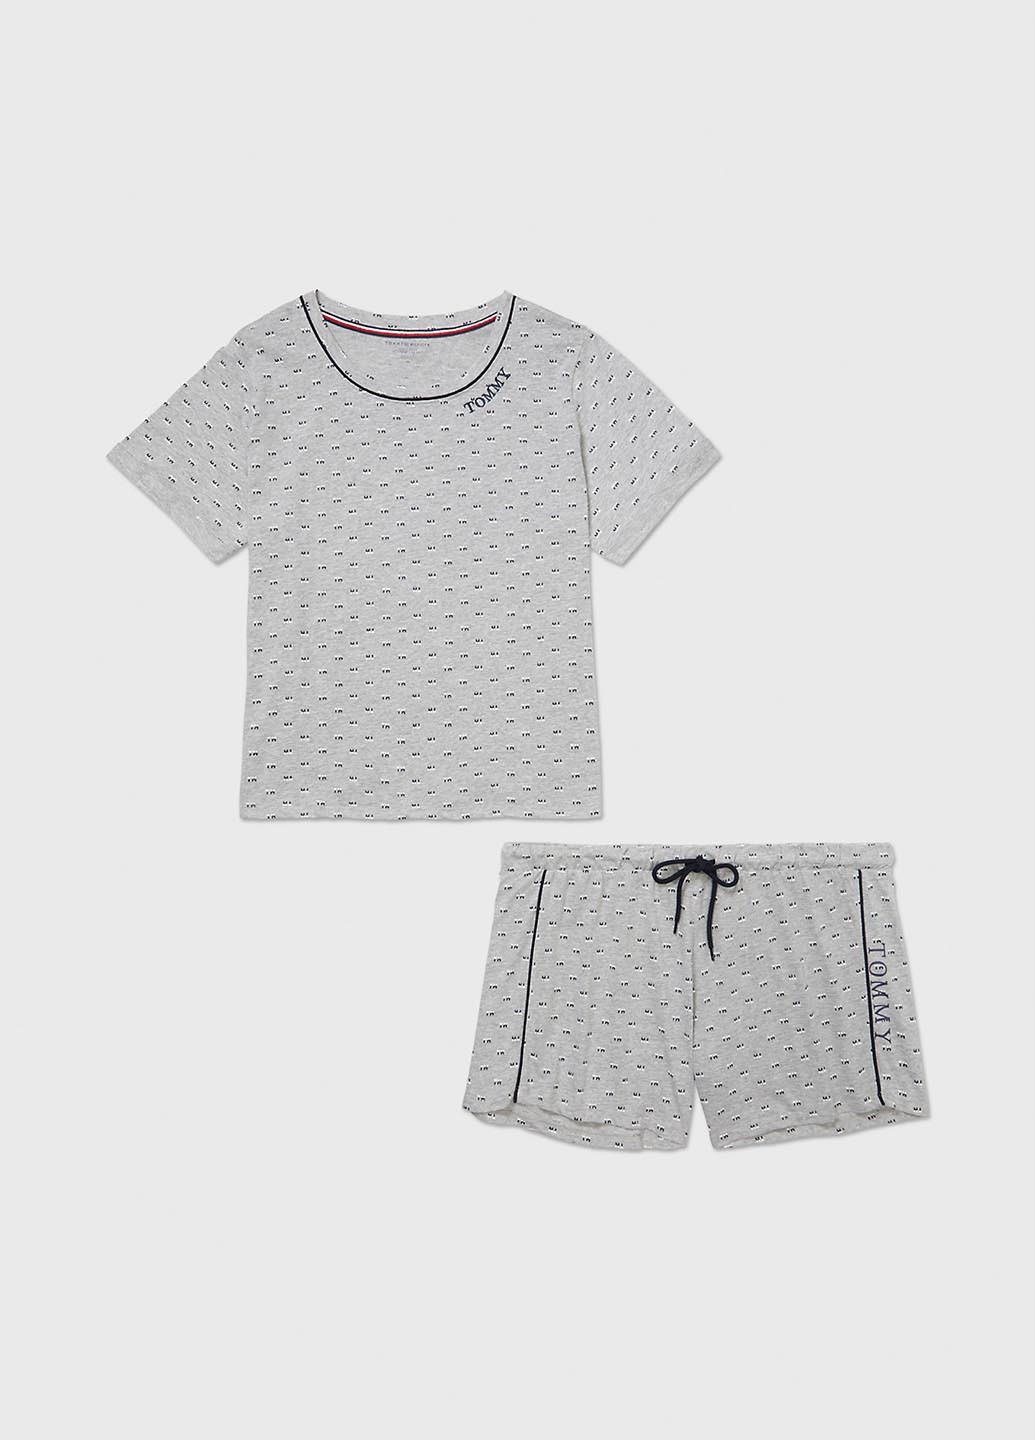 Сіра всесезон піжама (футболка, шорти) футболка + шорти Tommy Hilfiger